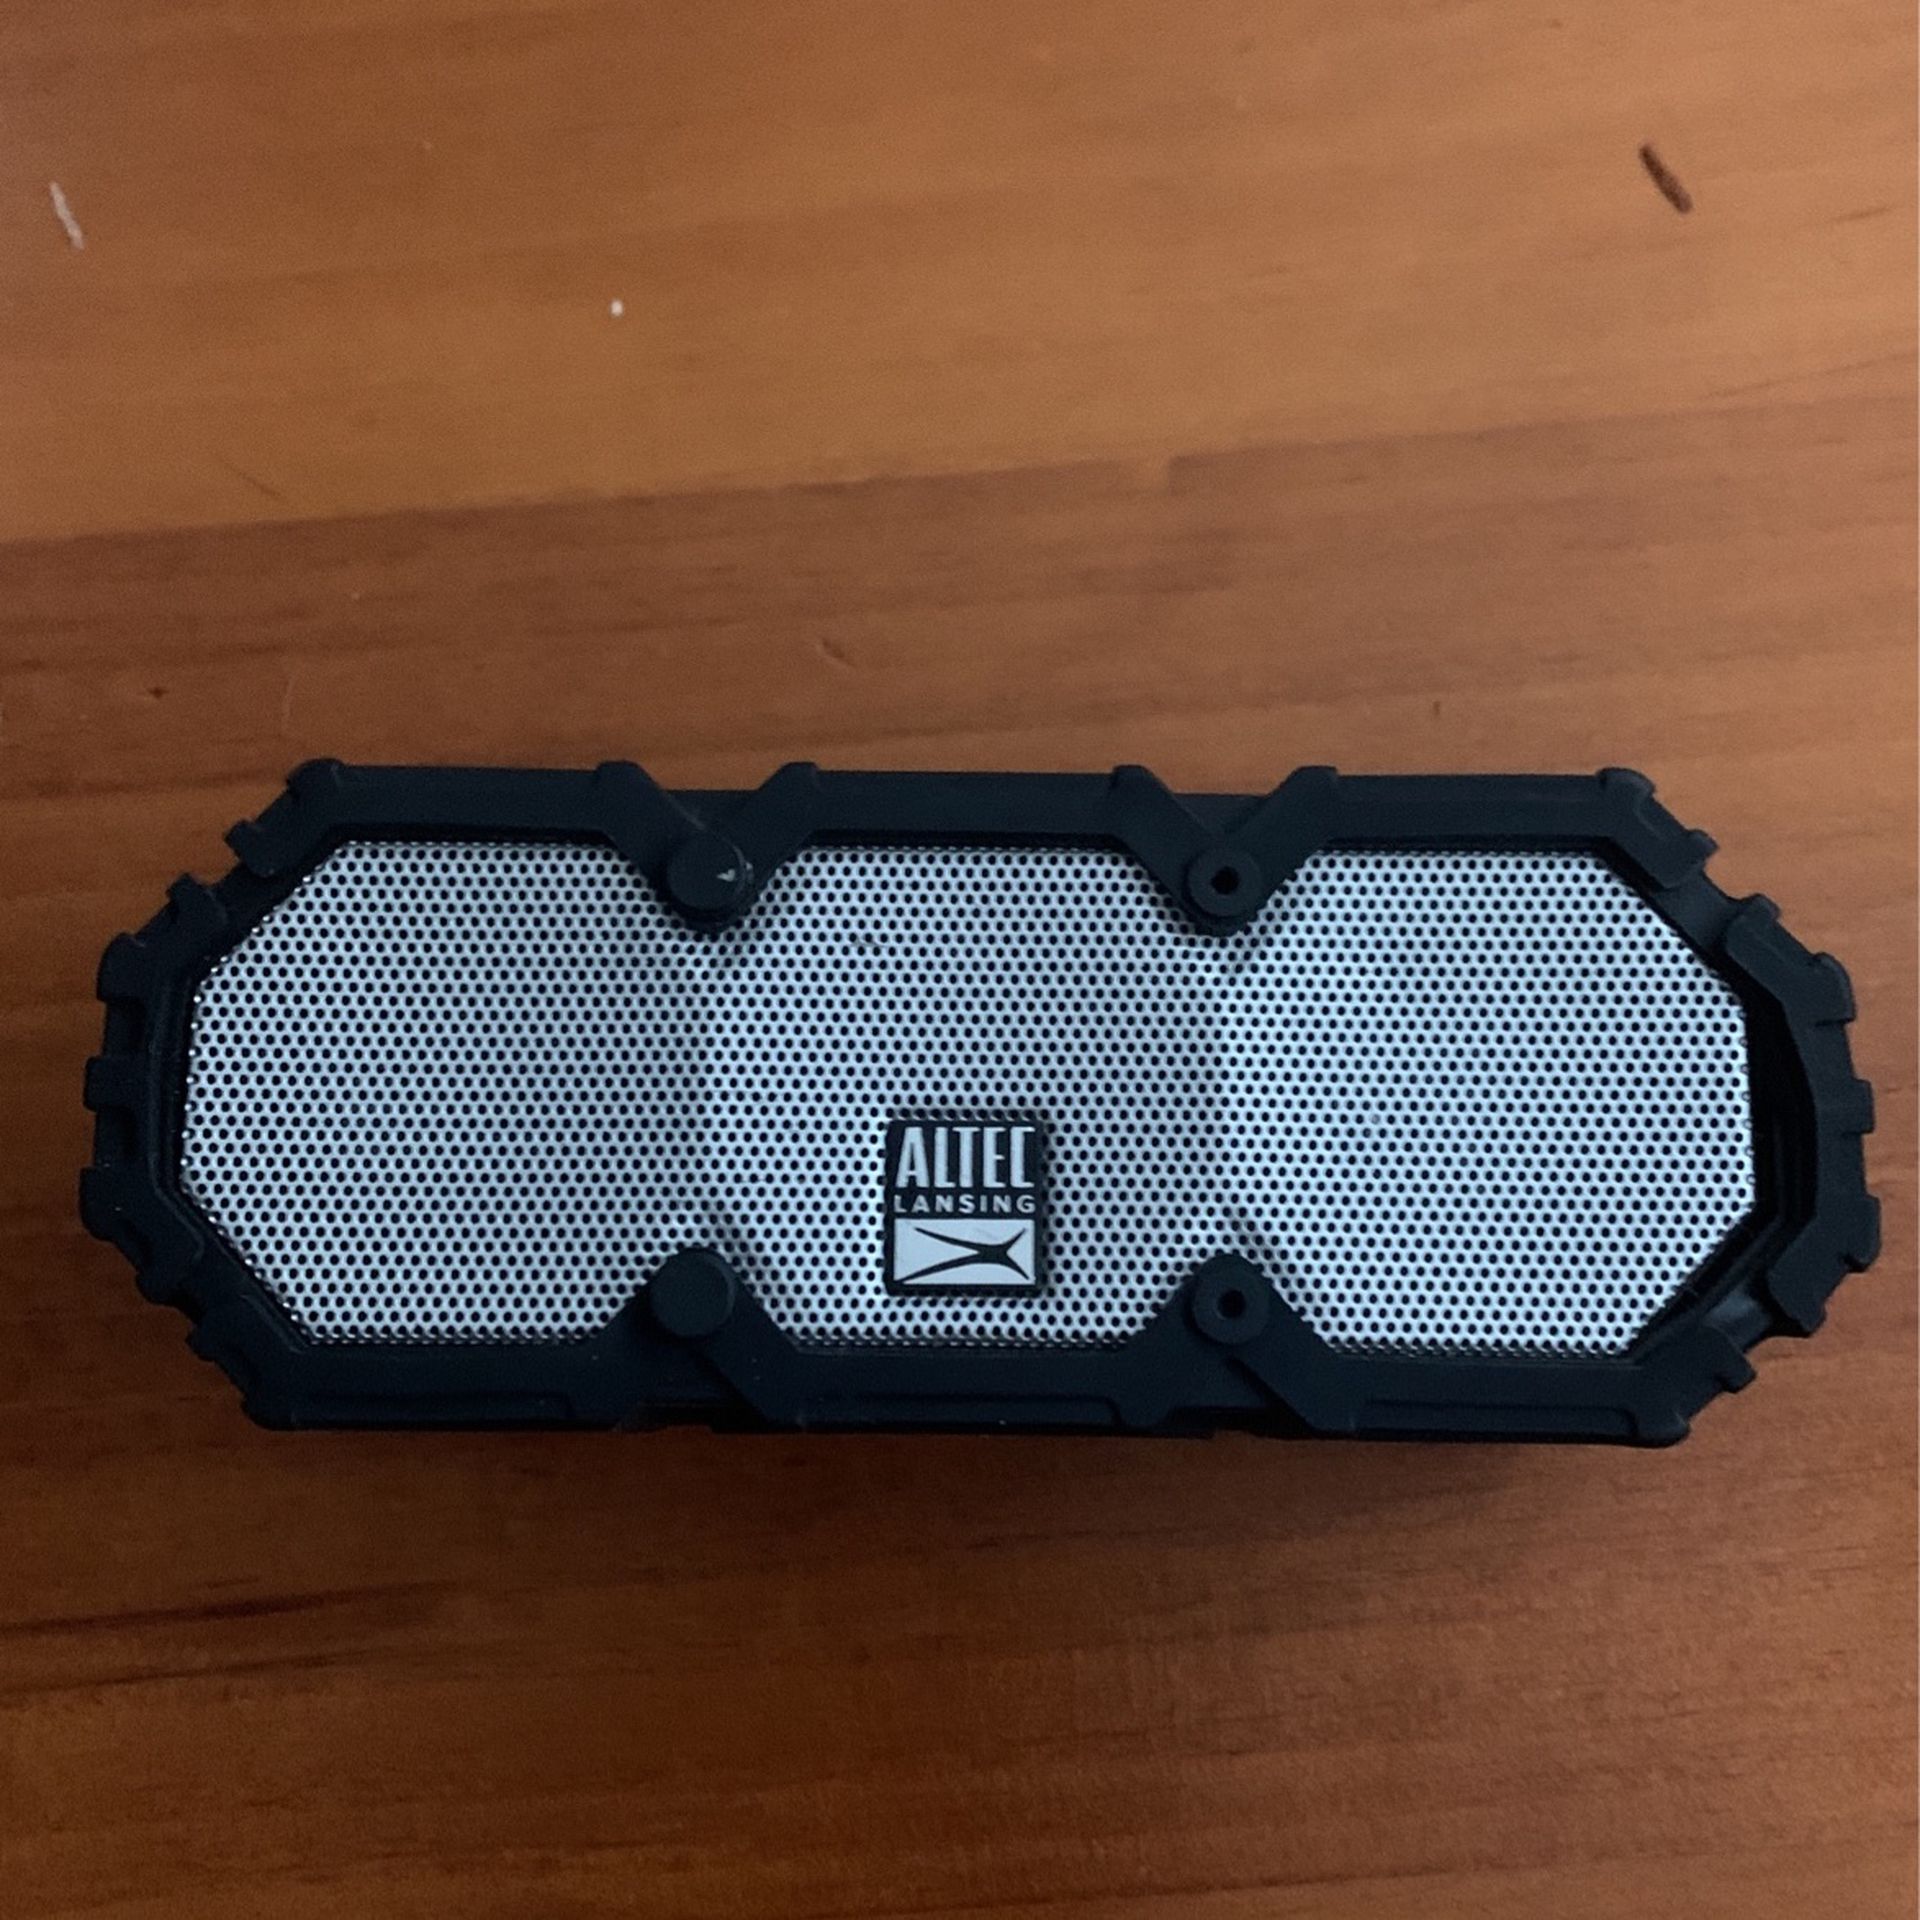 Altec Lansing Mini Speaker